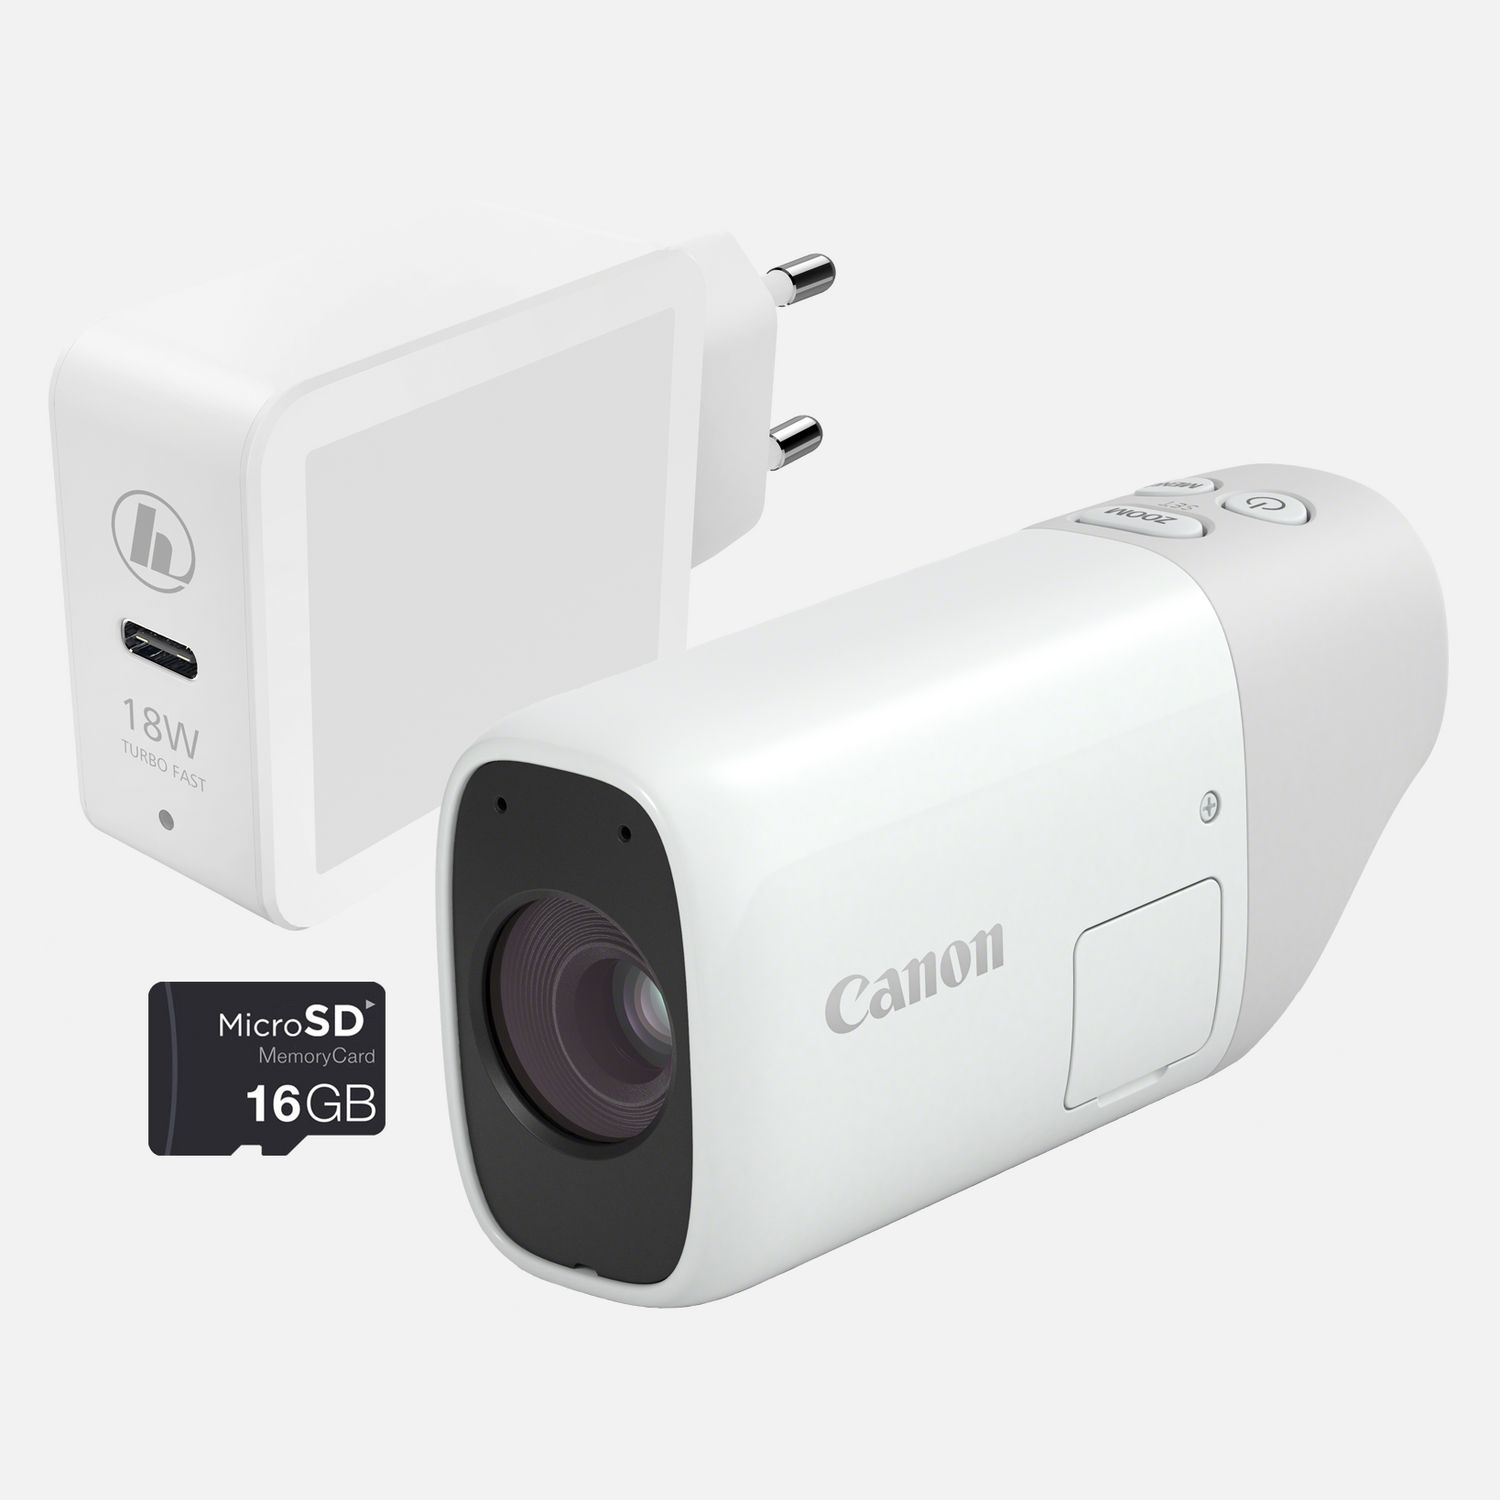 Comprar Canon PowerShot ZOOM, cámara compacta monocular con teleobjetivo, kit esencial, en Cámaras Wi-Fi — Tienda Canon Espana